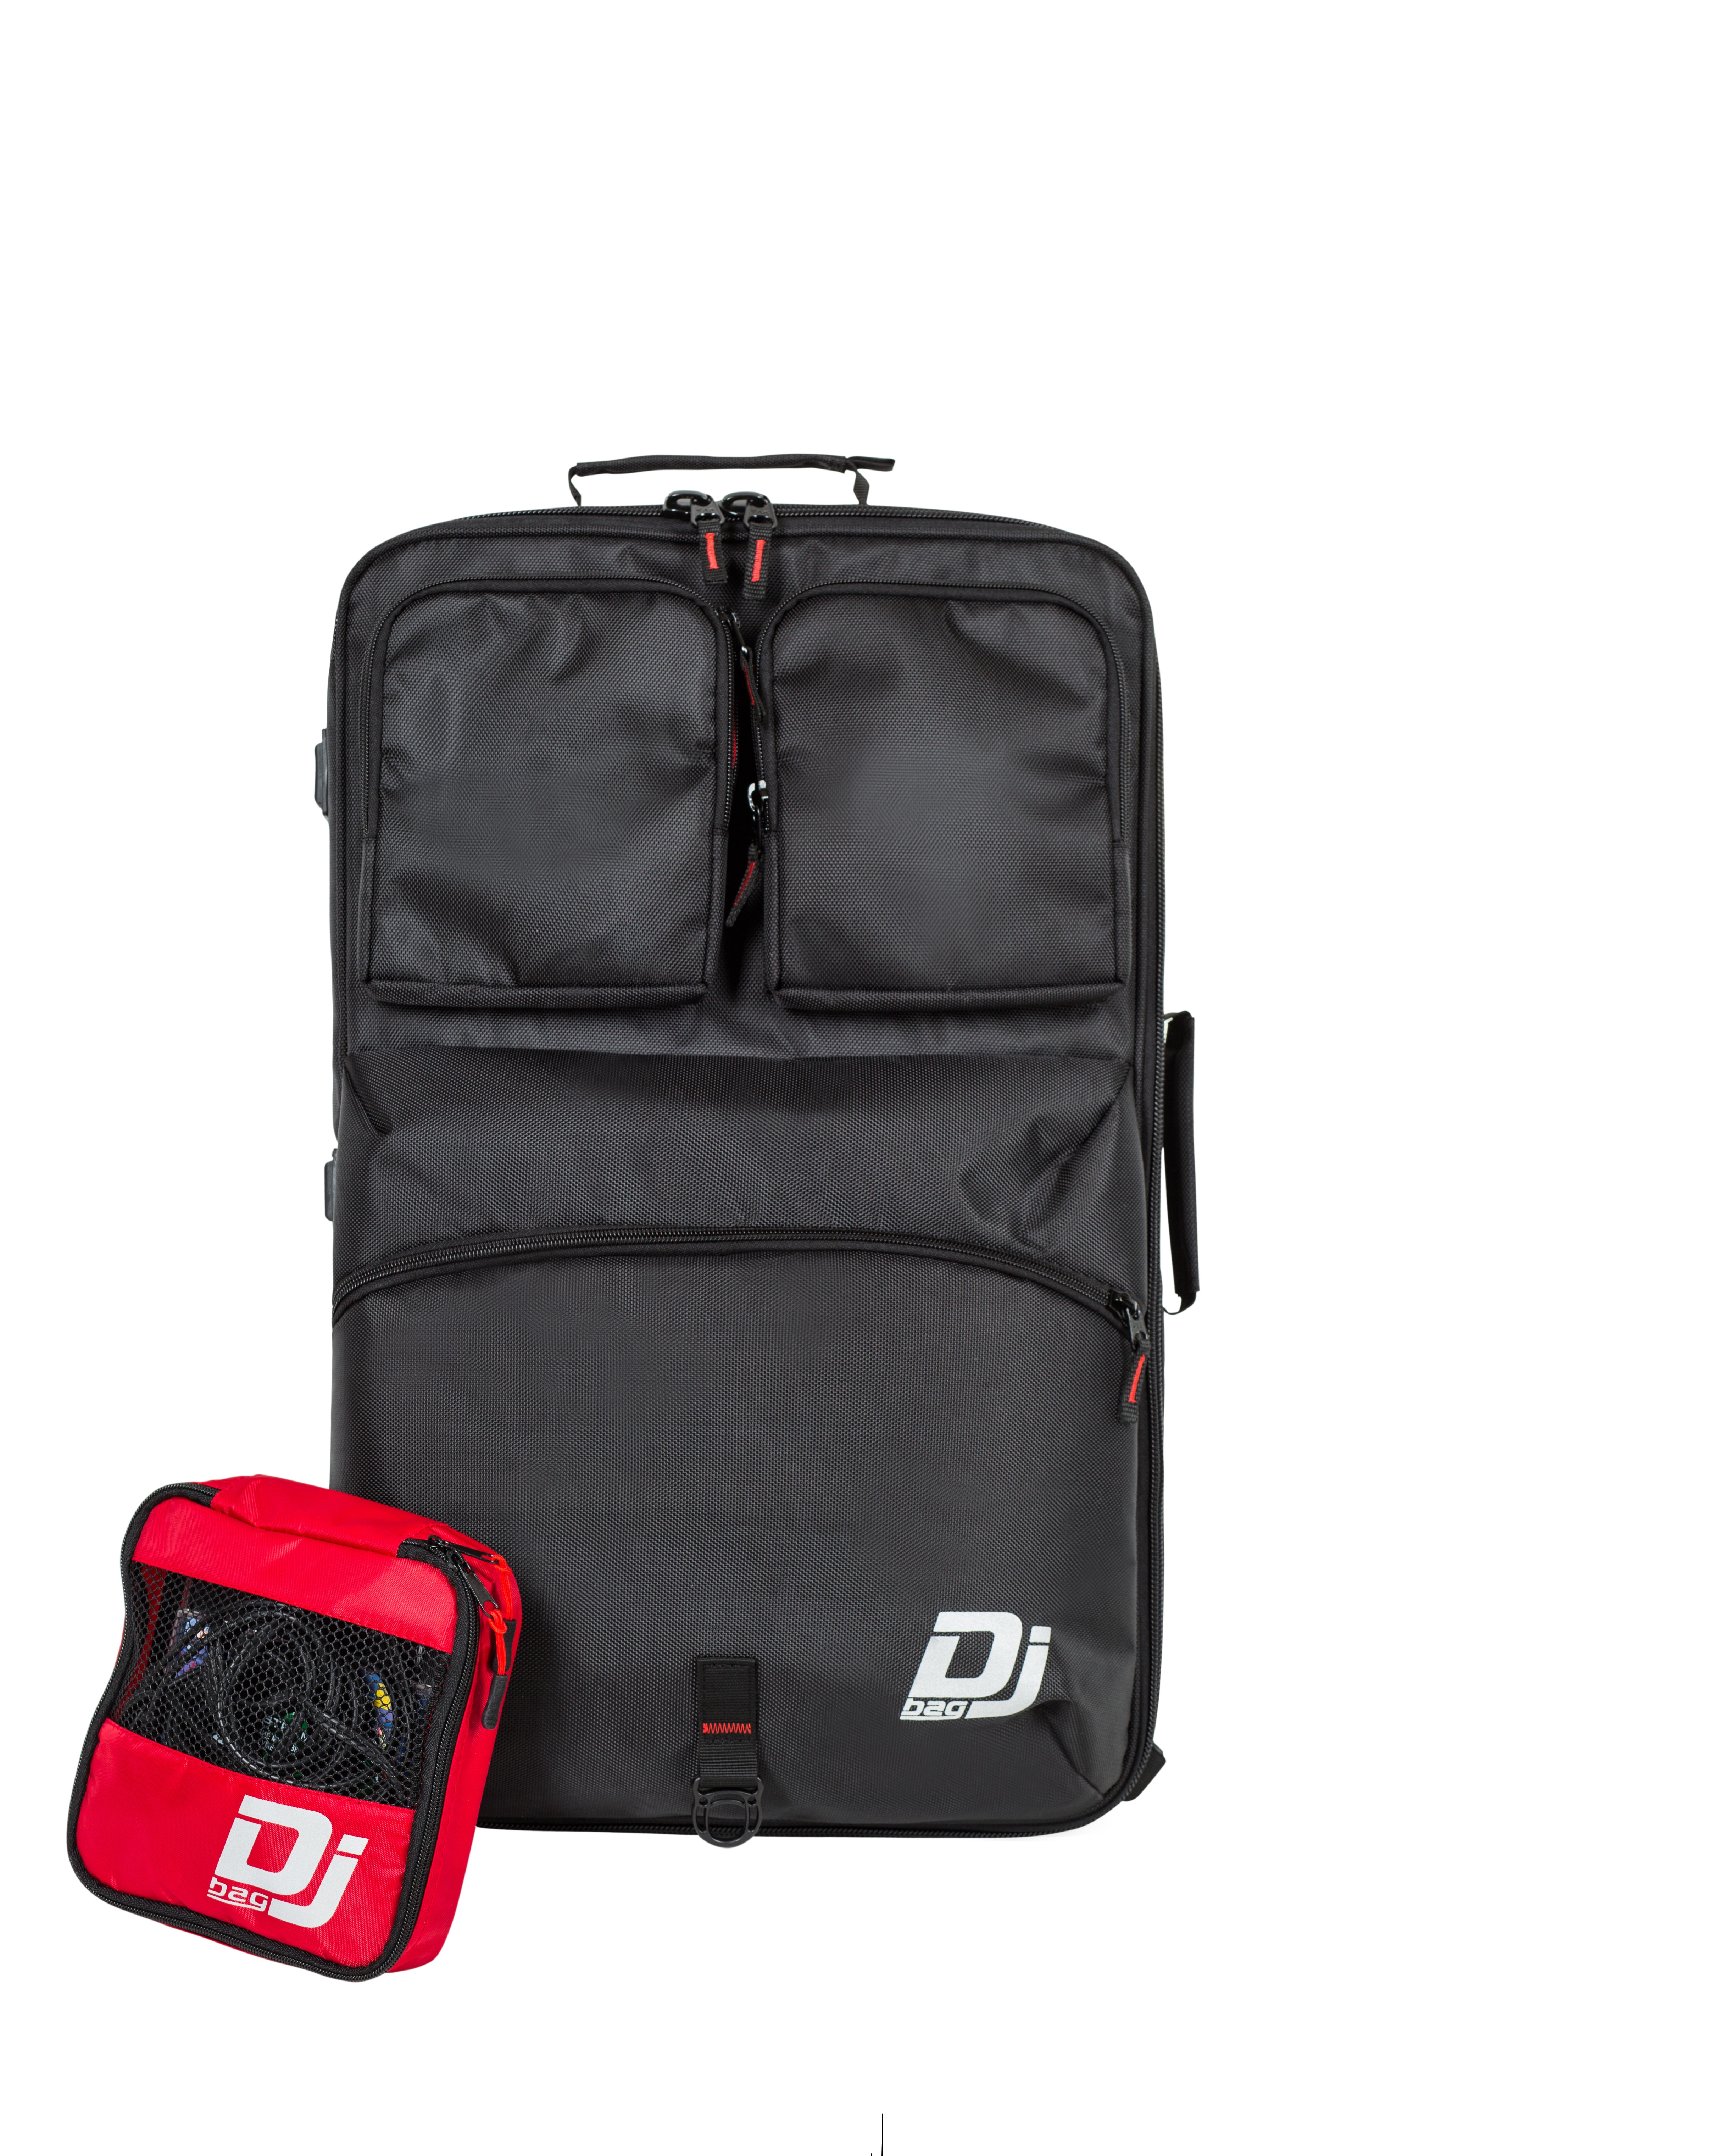 DJB K MINI PLUS - Сумка-рюкзак для 4-х канального DJ контроллера